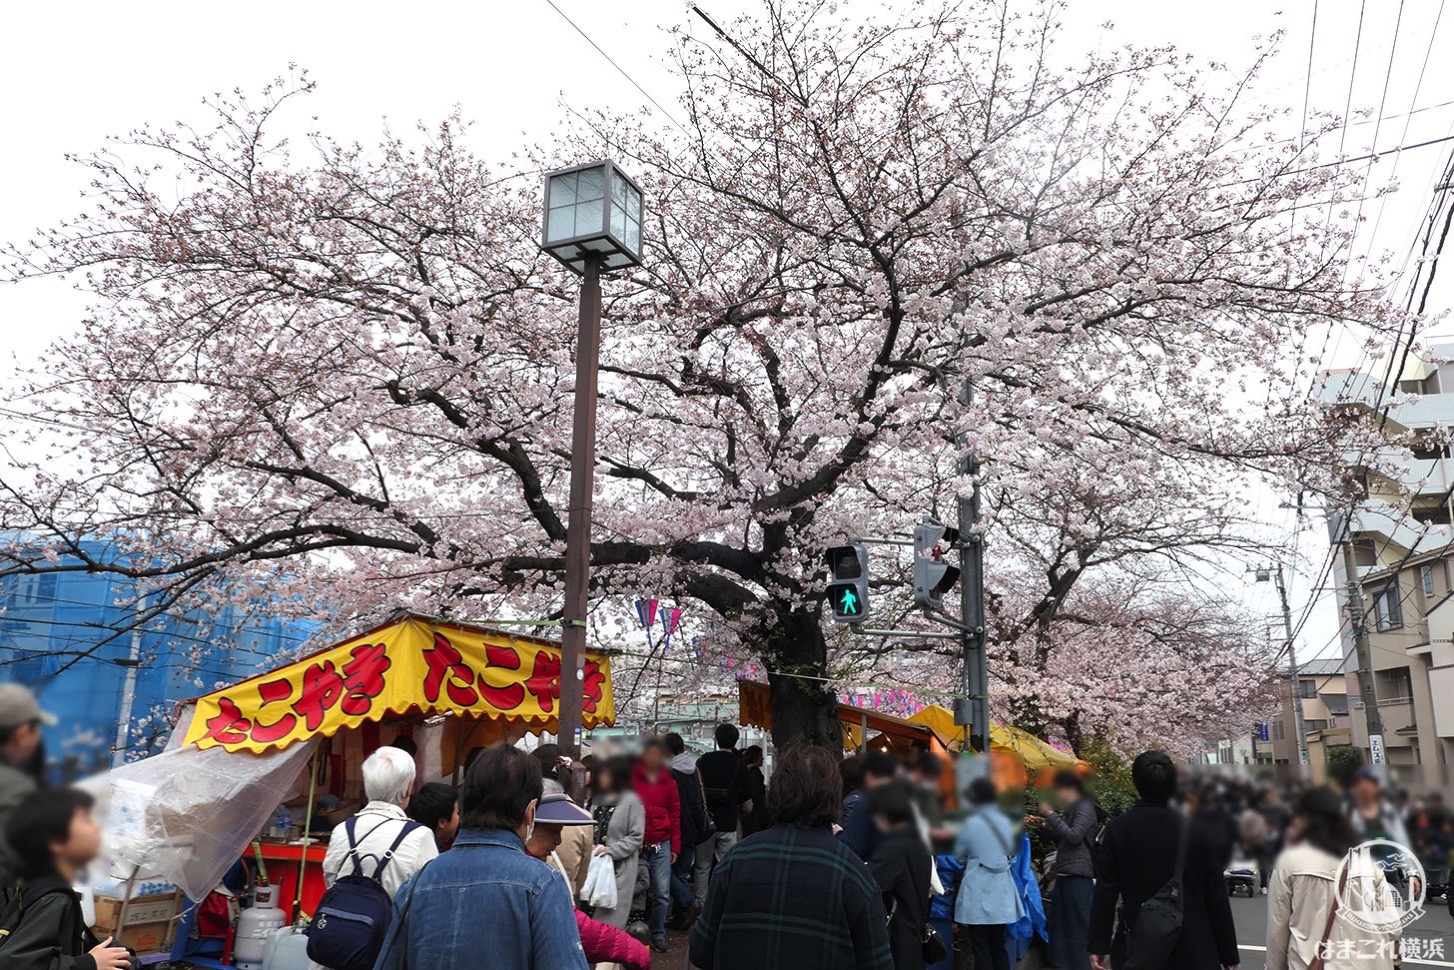 大岡川の桜まつりで屋台と花見を楽しむなら弘明寺の商店街スタートがおすすめ はまこれ横浜